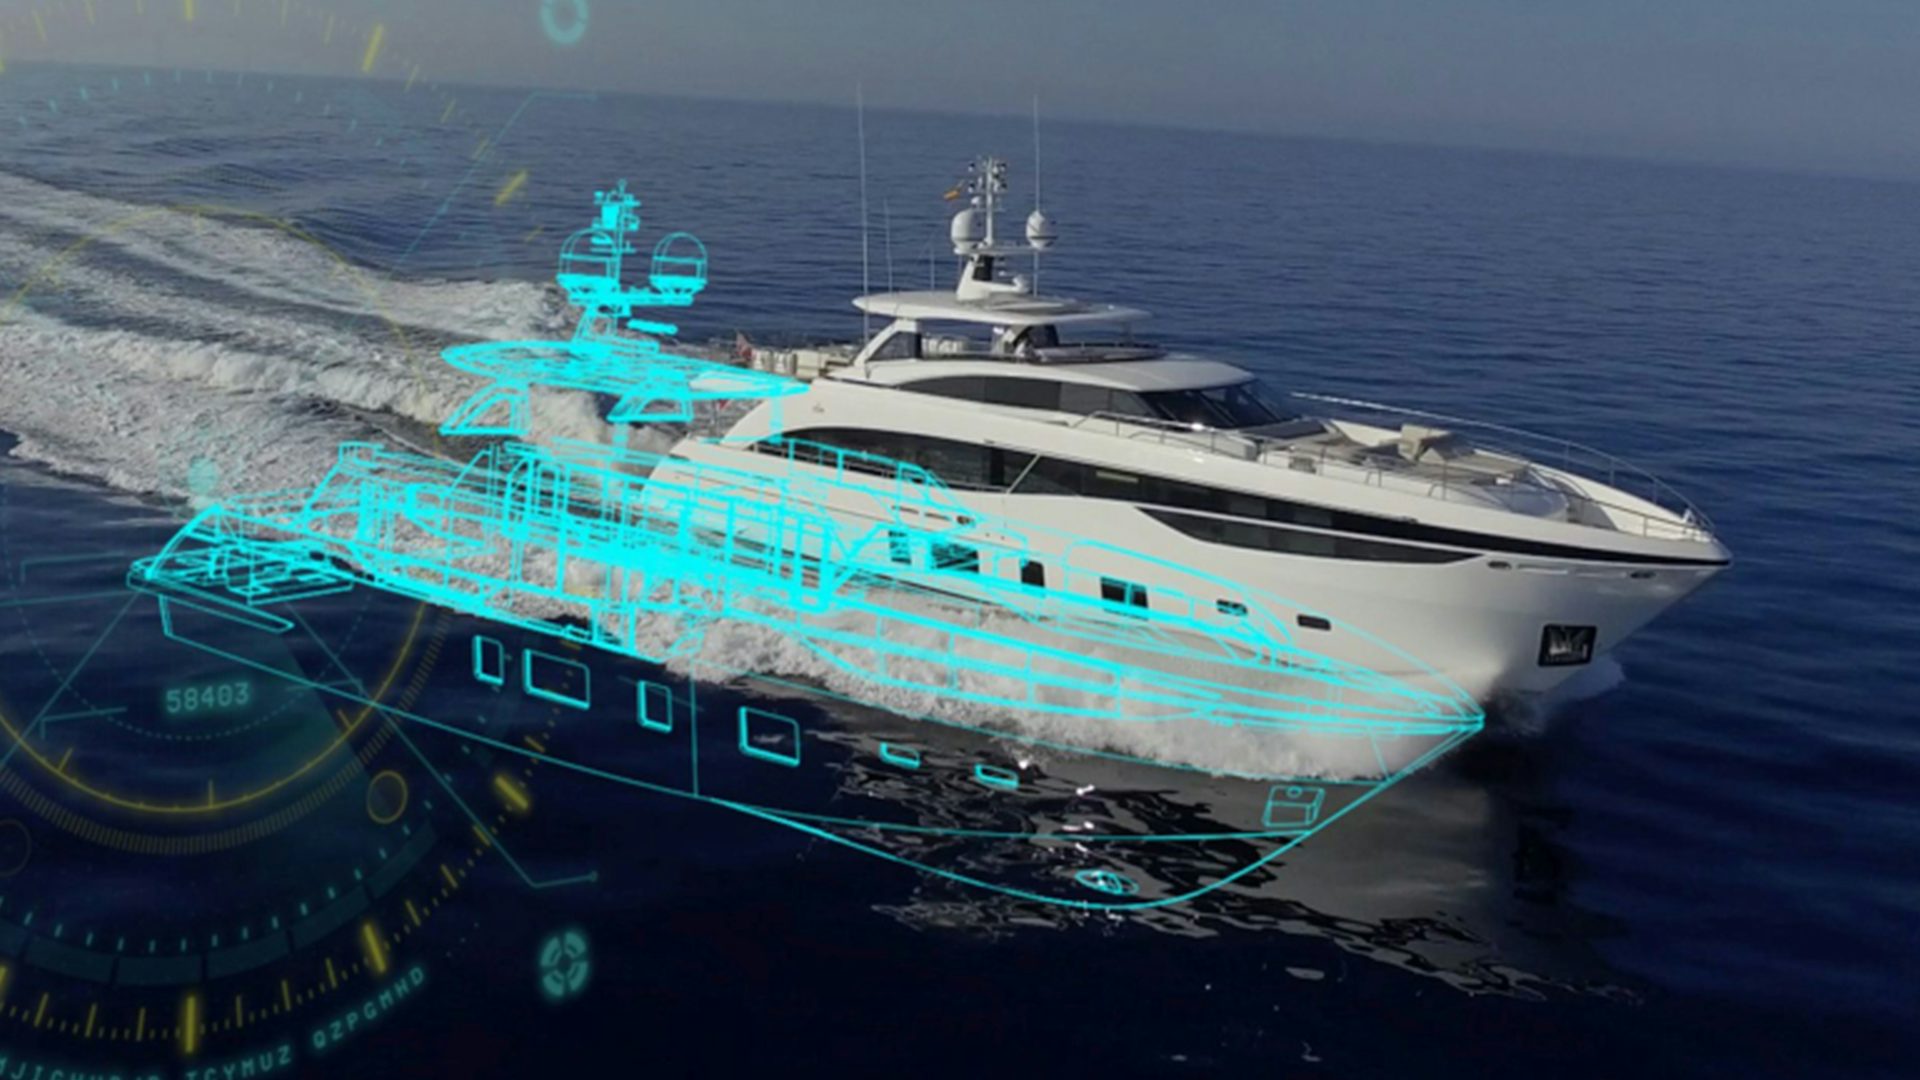 Yacht with digital overlay